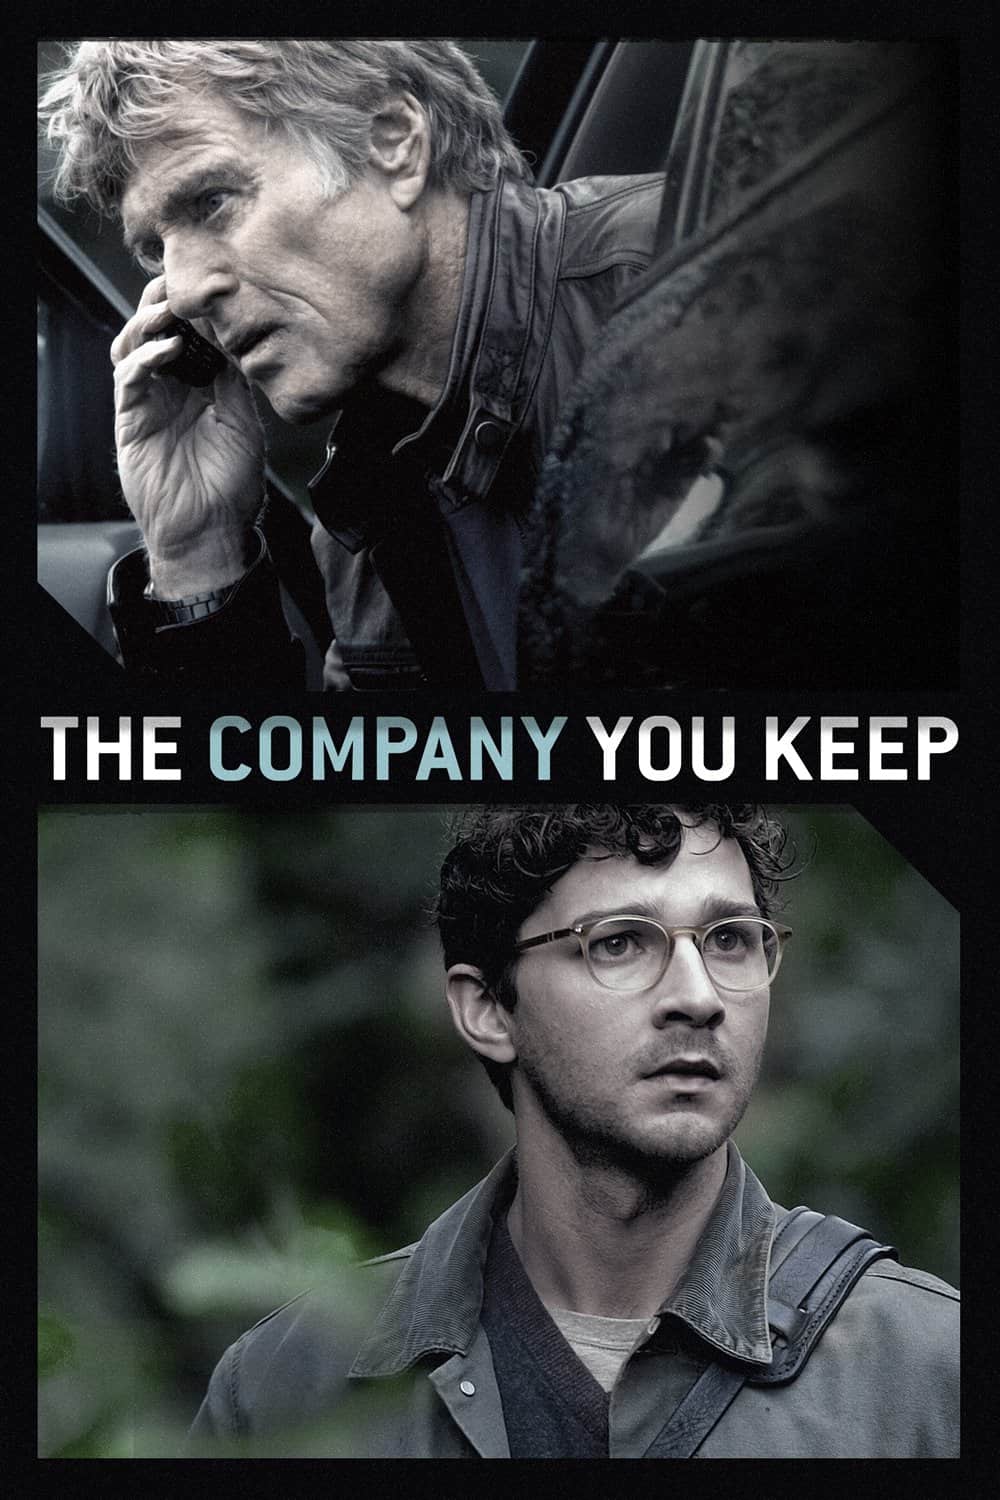 The Company You Keep, 2012 